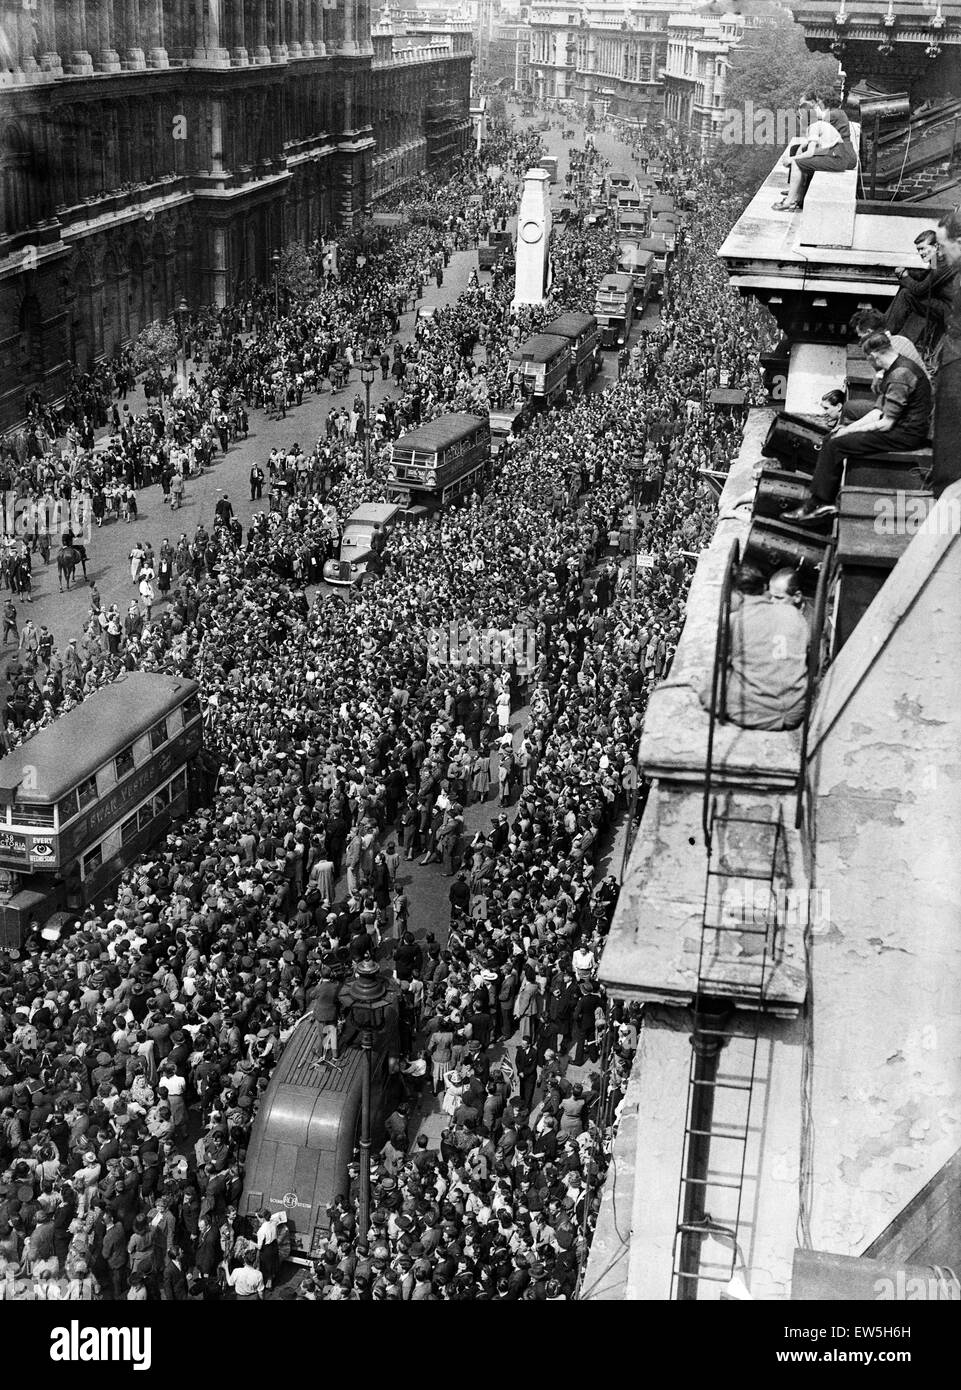 VE Day Feierlichkeiten in London am Ende des zweiten Weltkriegs.  Einige der großen Menschenmenge versammelt in Whitehall für die Feierlichkeiten.  8. Mai 1945. Stockfoto